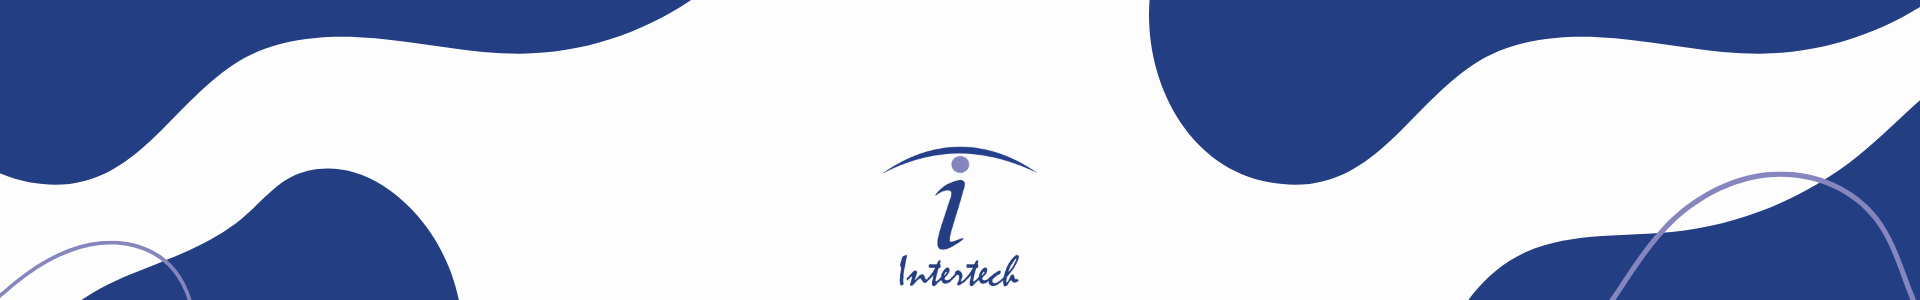 Marca Intertech 